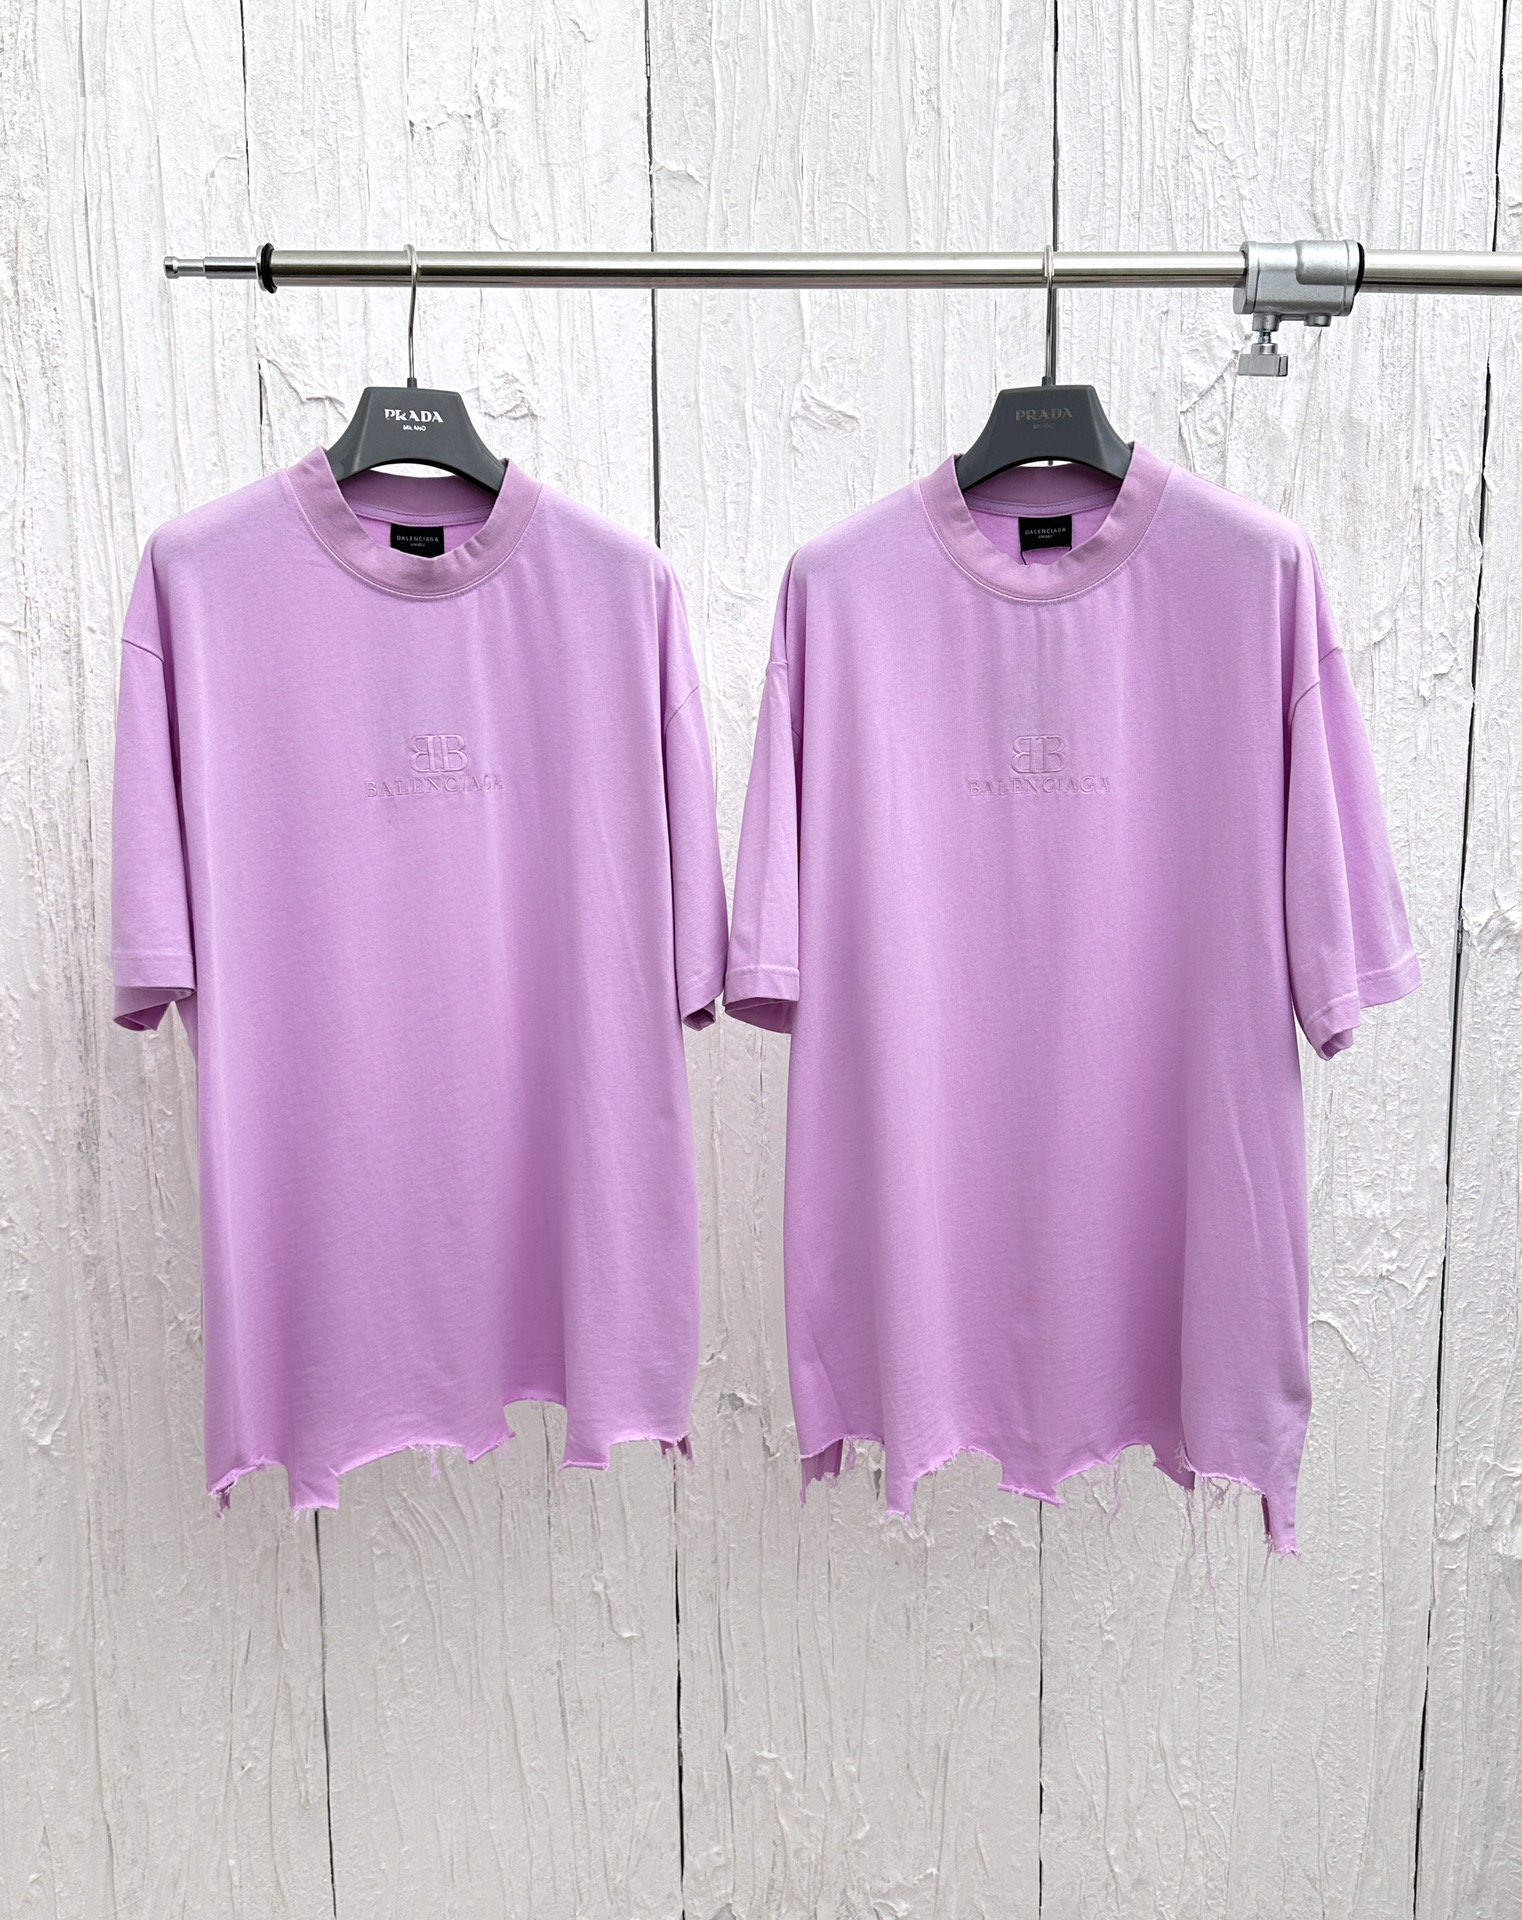 Balenciaga Clothing T-Shirt Embroidery Unisex Short Sleeve